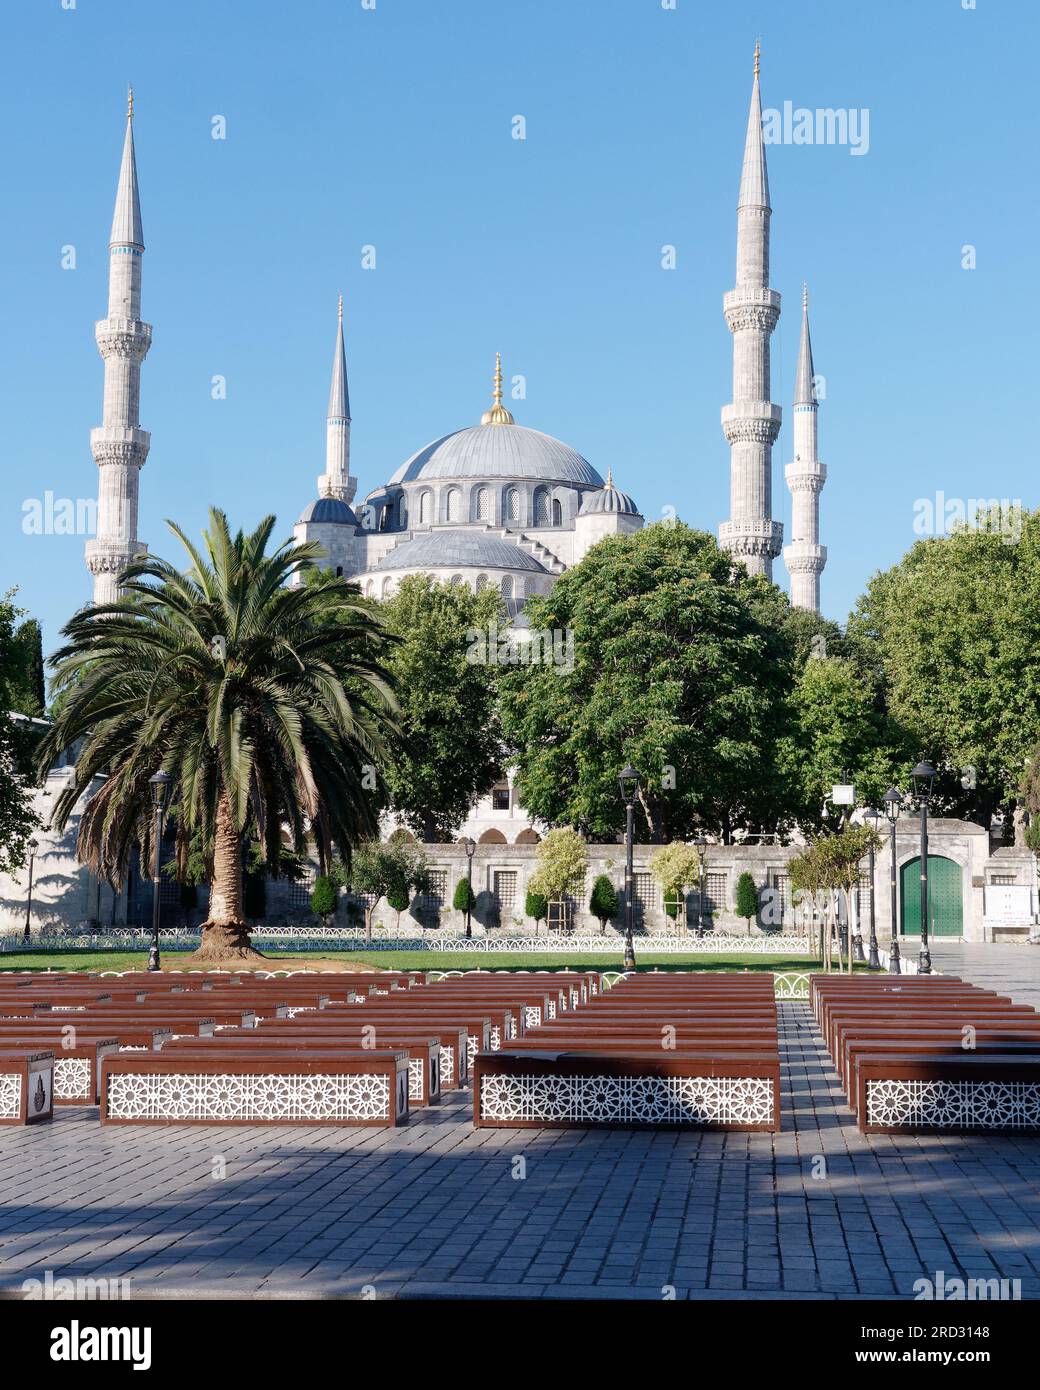 Sultan Ahmed Moschee auch bekannt als Blaue Moschee im Sultanahmet Park, Istanbul, Türkei. Malerischer Bereich mit Bäumen, Garten und Holzbänken. Stockfoto